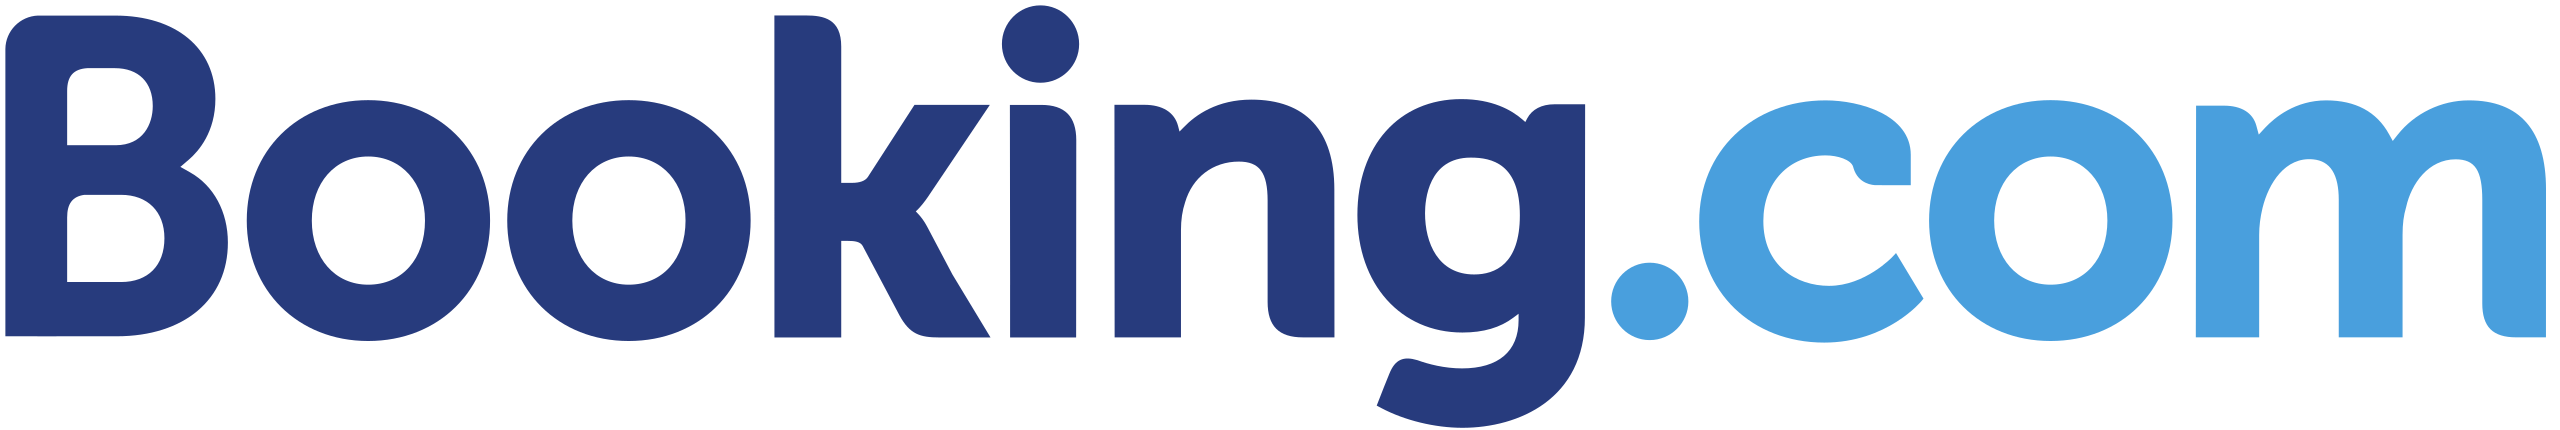 Booking_Logo